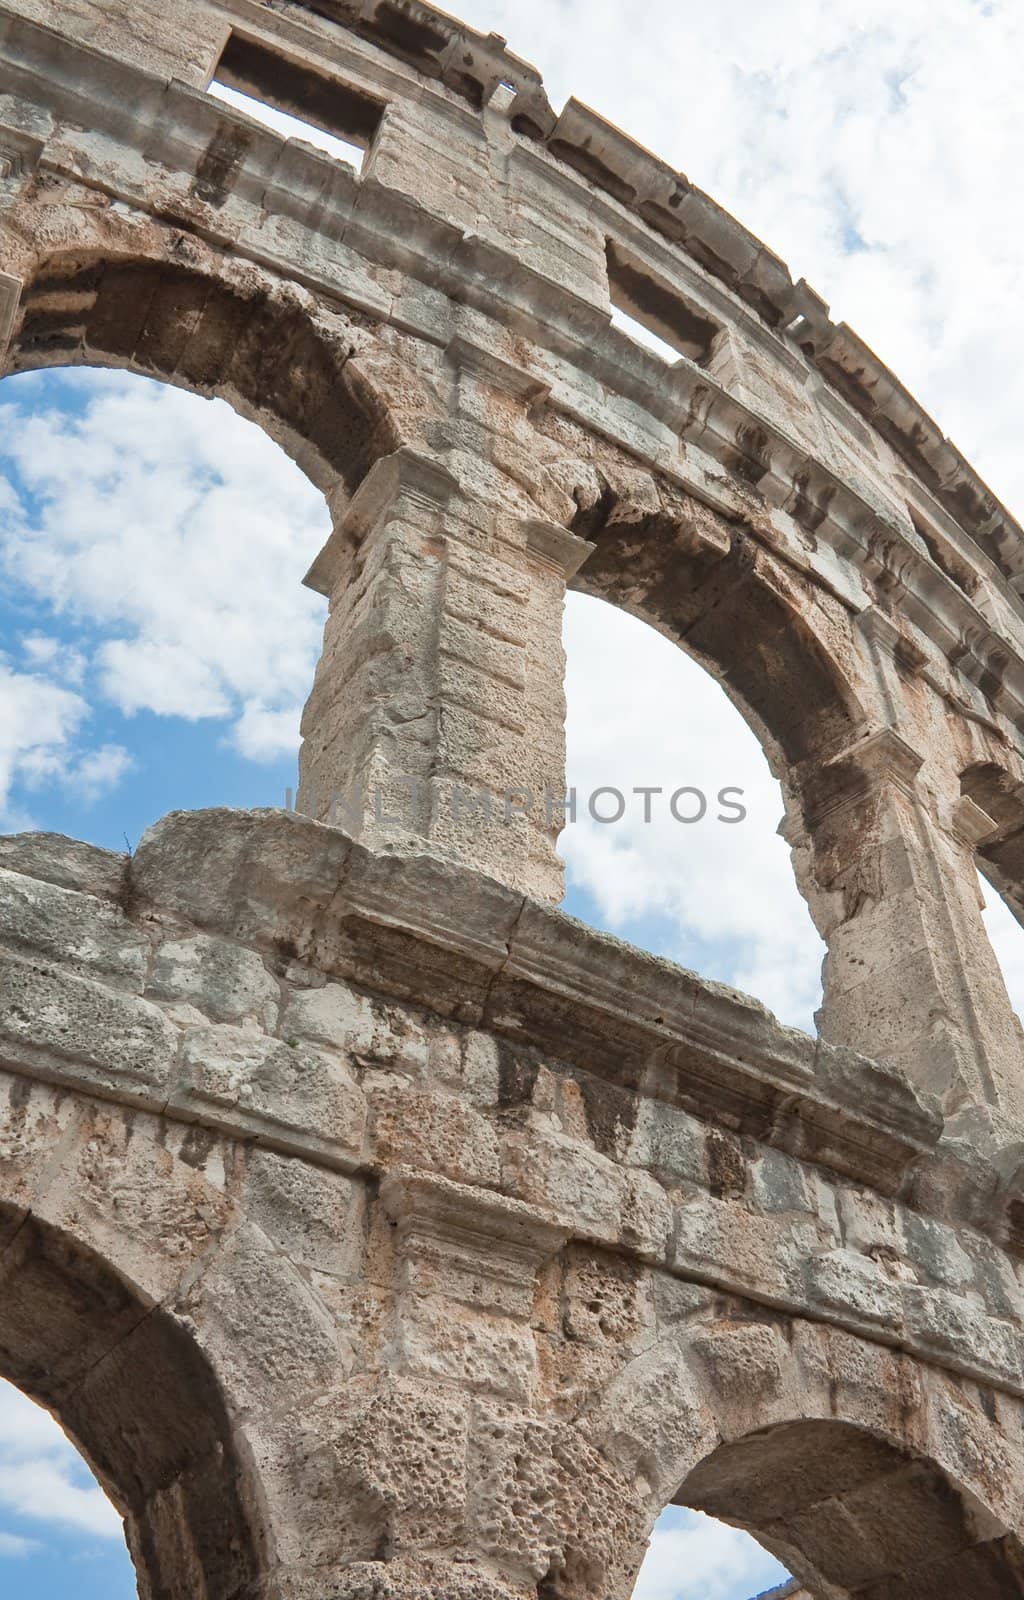 Roman amphitheater in Pula, Croatia by nikolpetr